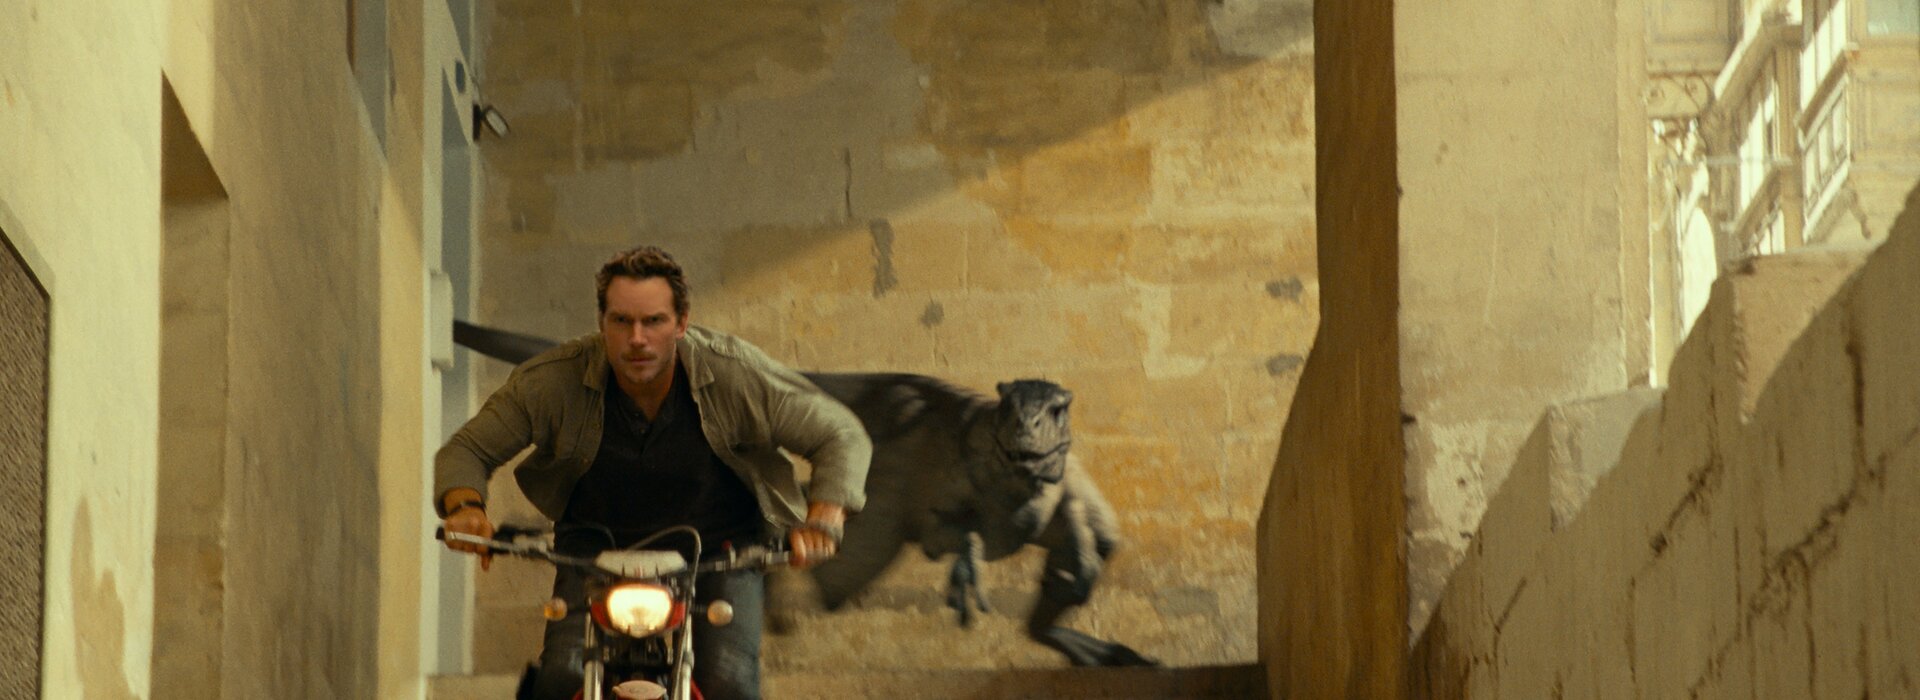 Kino-Tipps: In "Jurassic World 3" sind die Dinos am Vormarsch  | © UPI Media